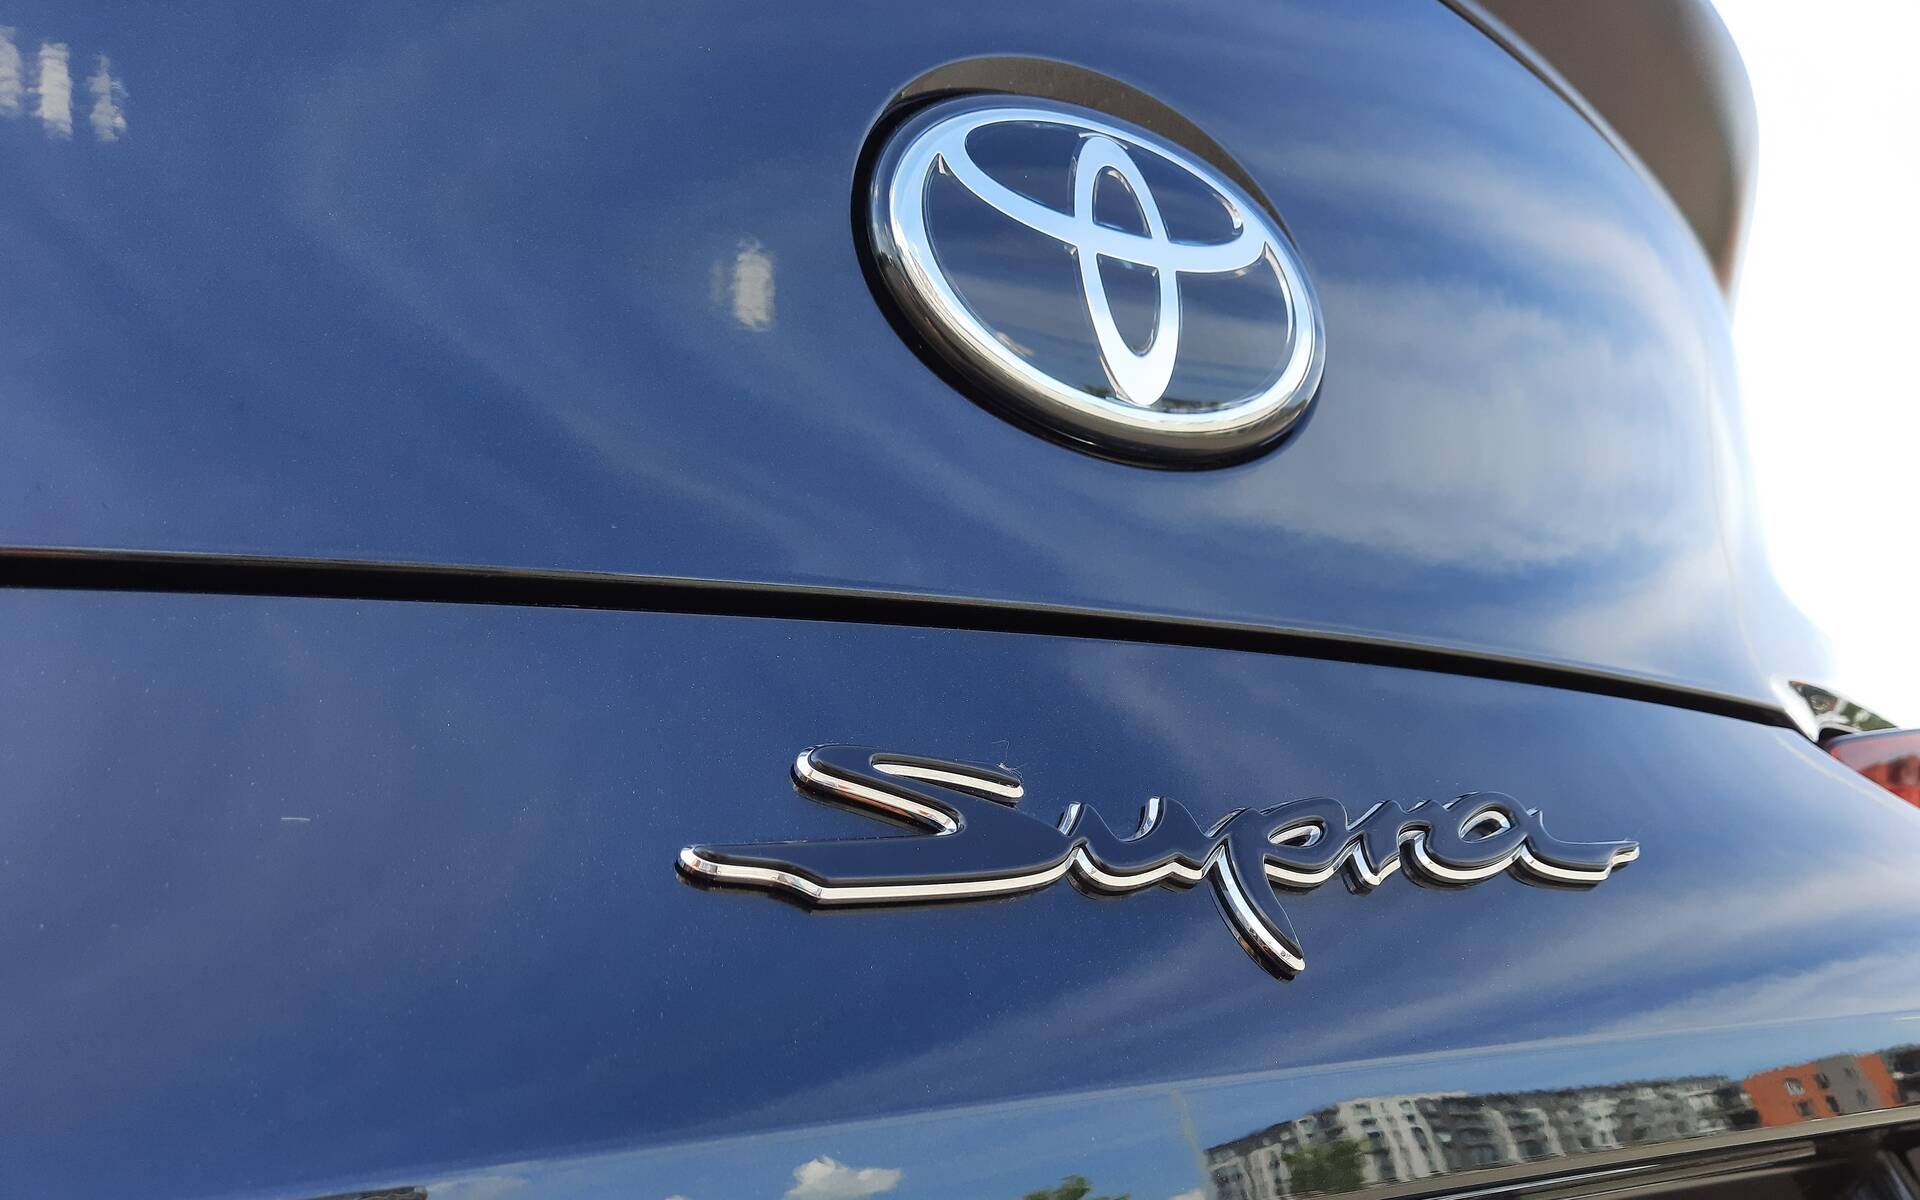 Toyota Supra manuelle : Toyota Canada fait le point sur les rumeurs 495390-gr-supra-manuelle-toyota-canada-fait-le-point-sur-les-rumeurs